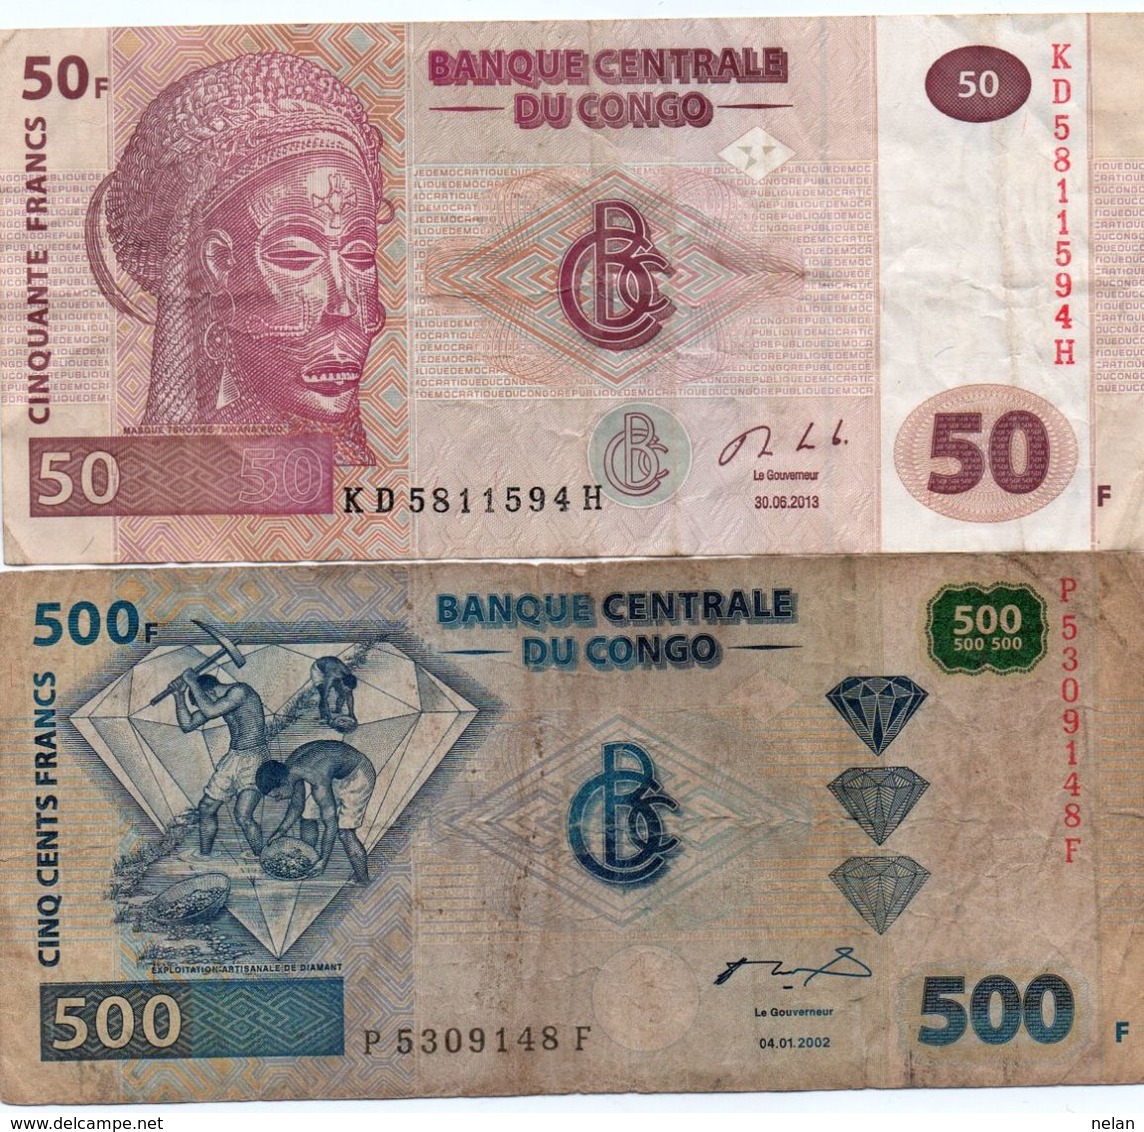 LOTTO Congo Democratic Republic Kinshasa -CIRC. - Lots & Kiloware - Banknotes